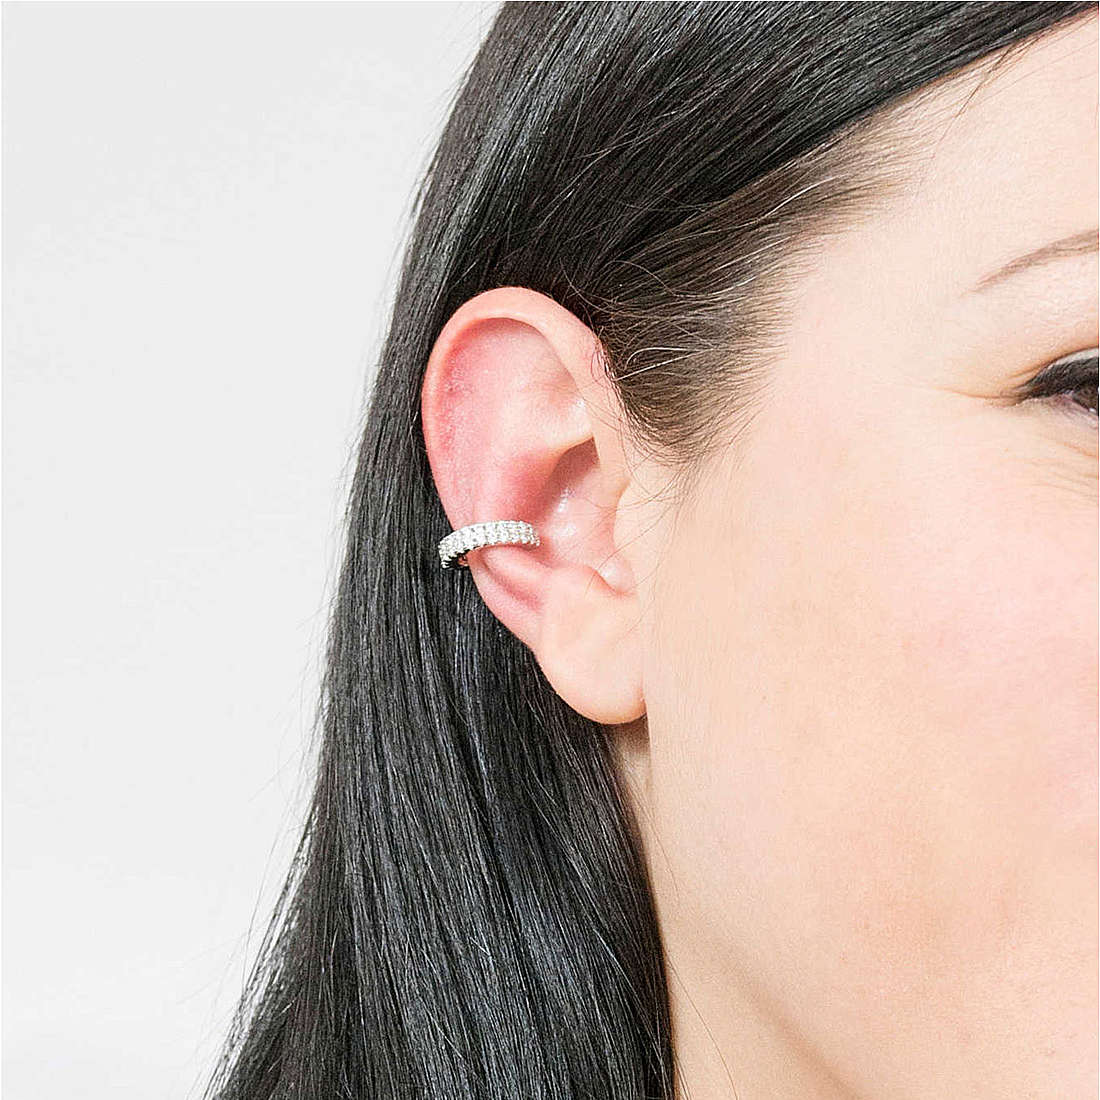 Rebecca earrings Golden ear woman SGEOBB01 photo wearing